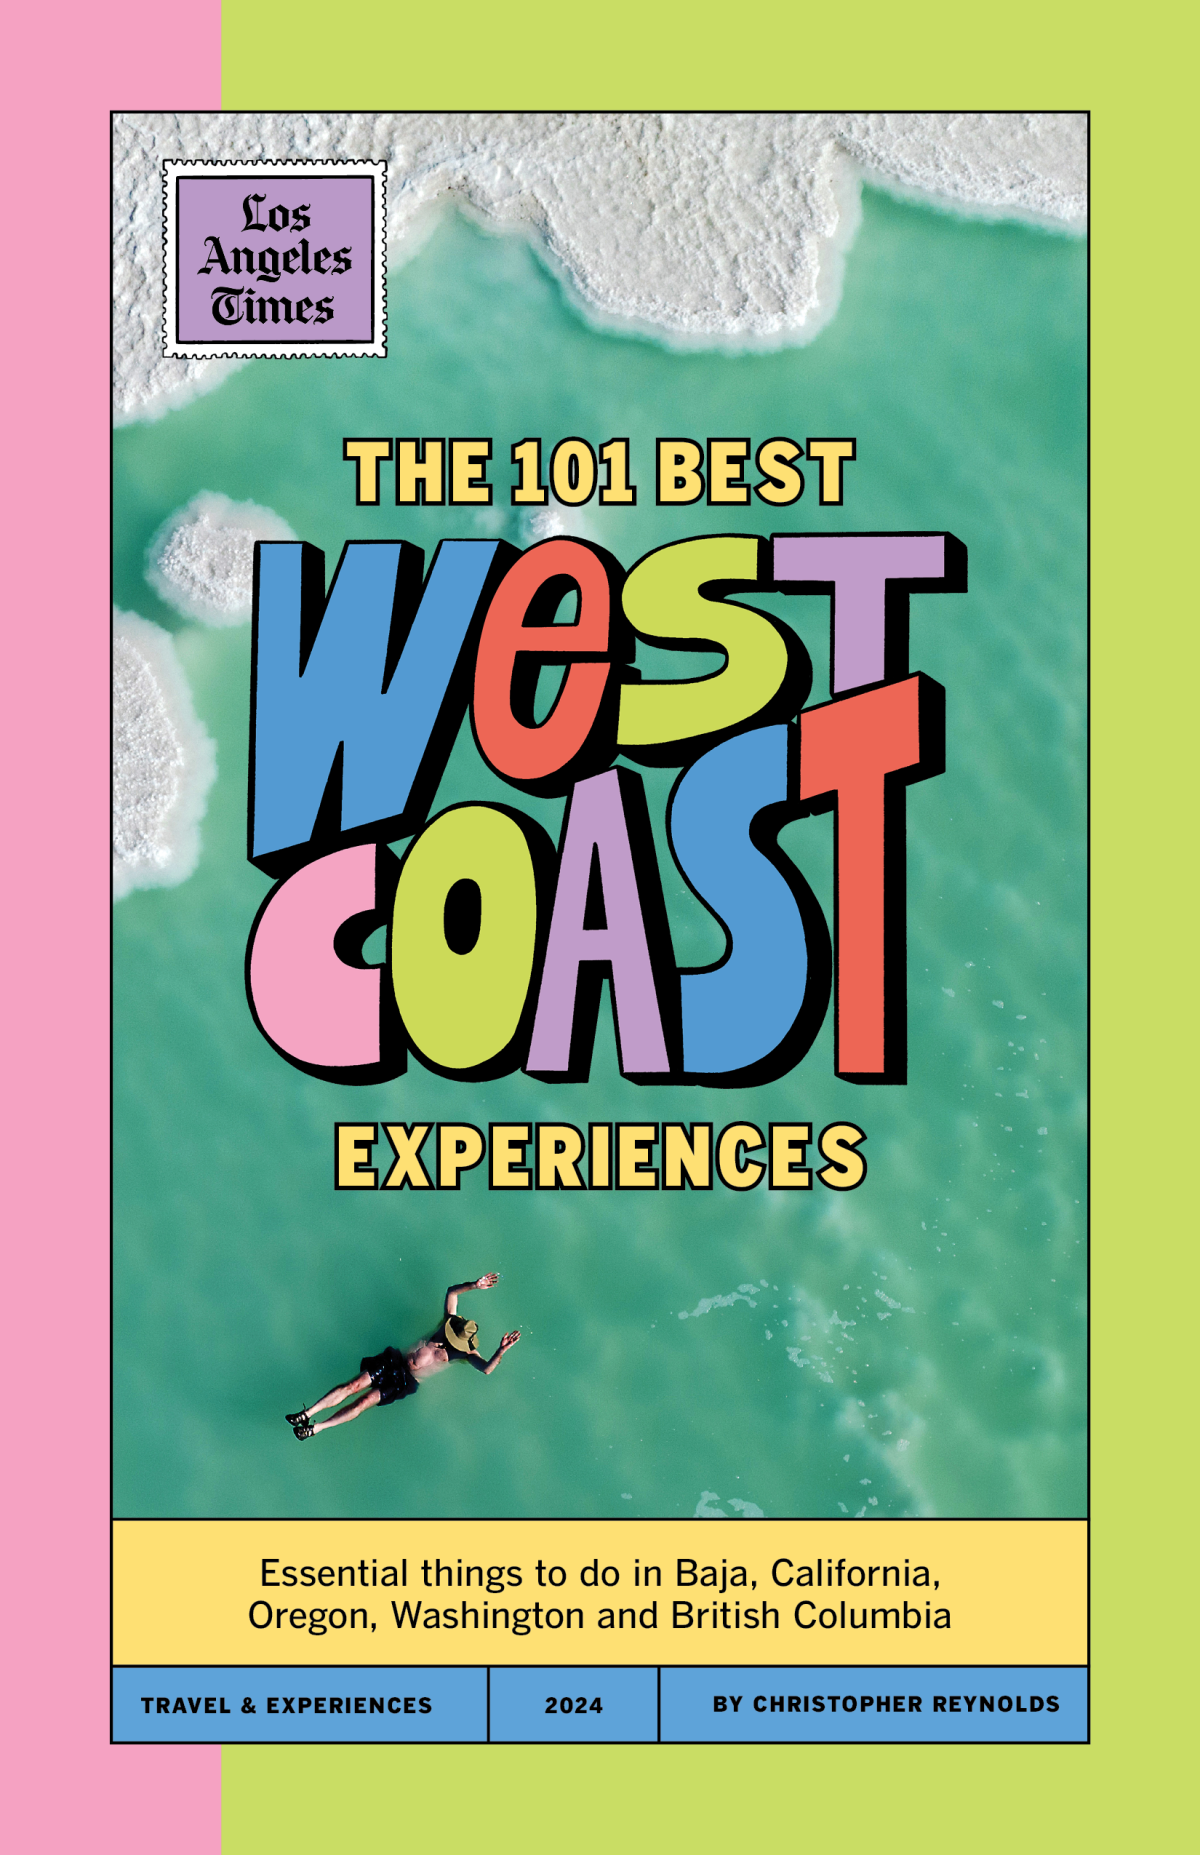 Portada de la revista 101 mejores experiencias de la costa oeste.